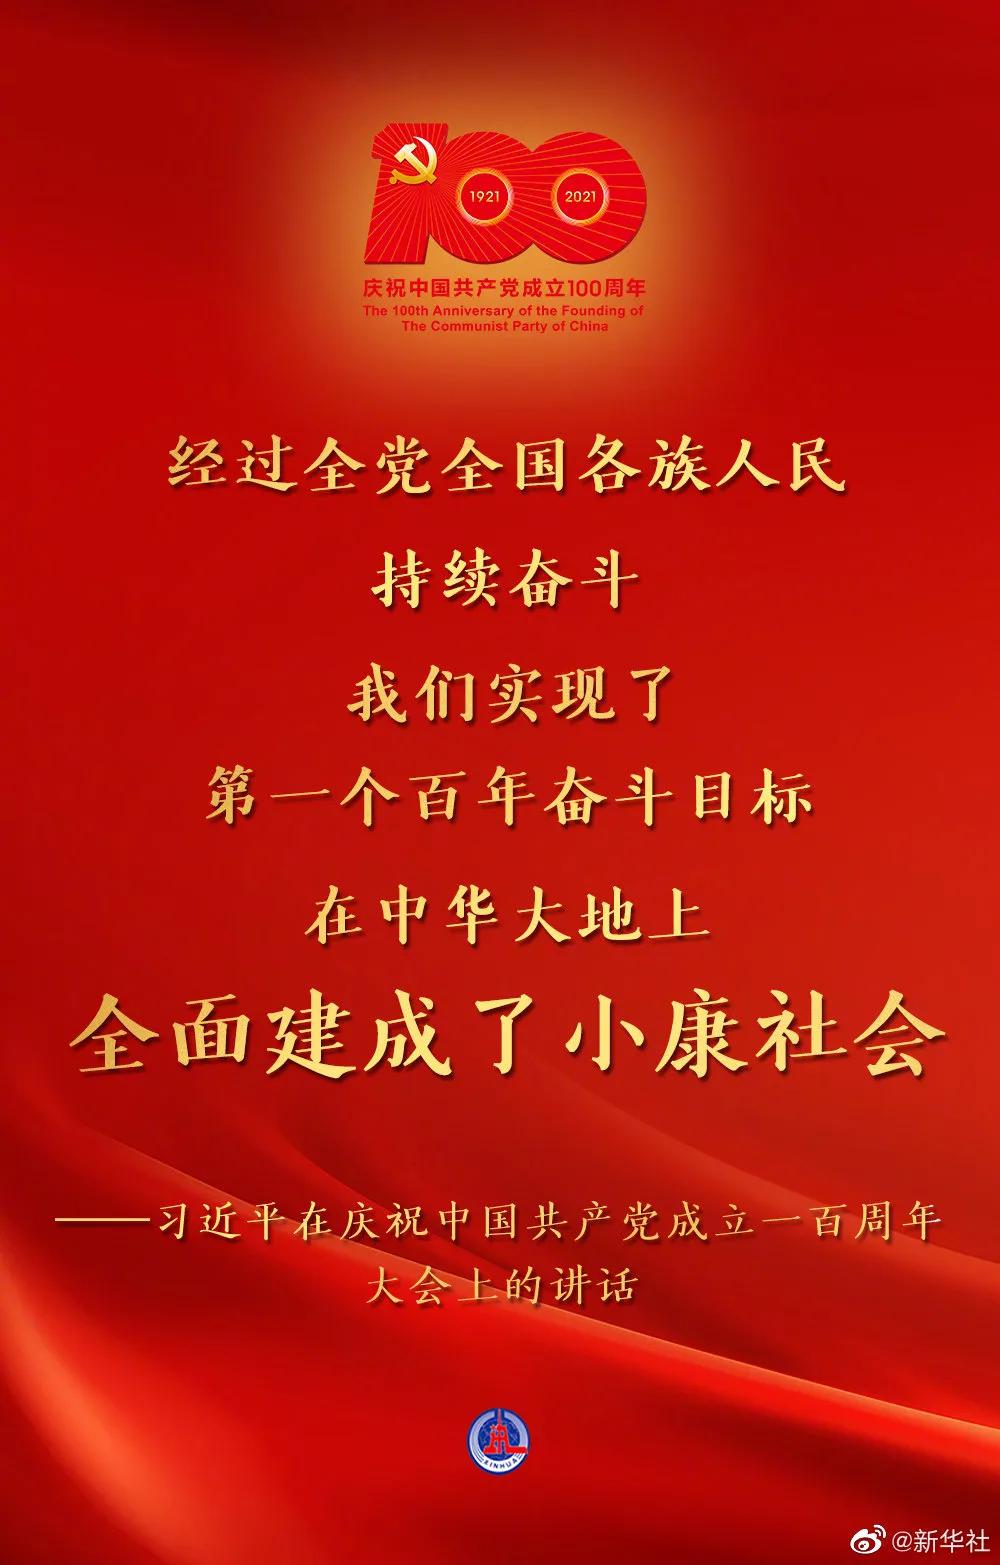 习近平代表党和人民庄严宣告：我们实现了第一个百年奋斗目标，在中华大地上全面建成了小康社会